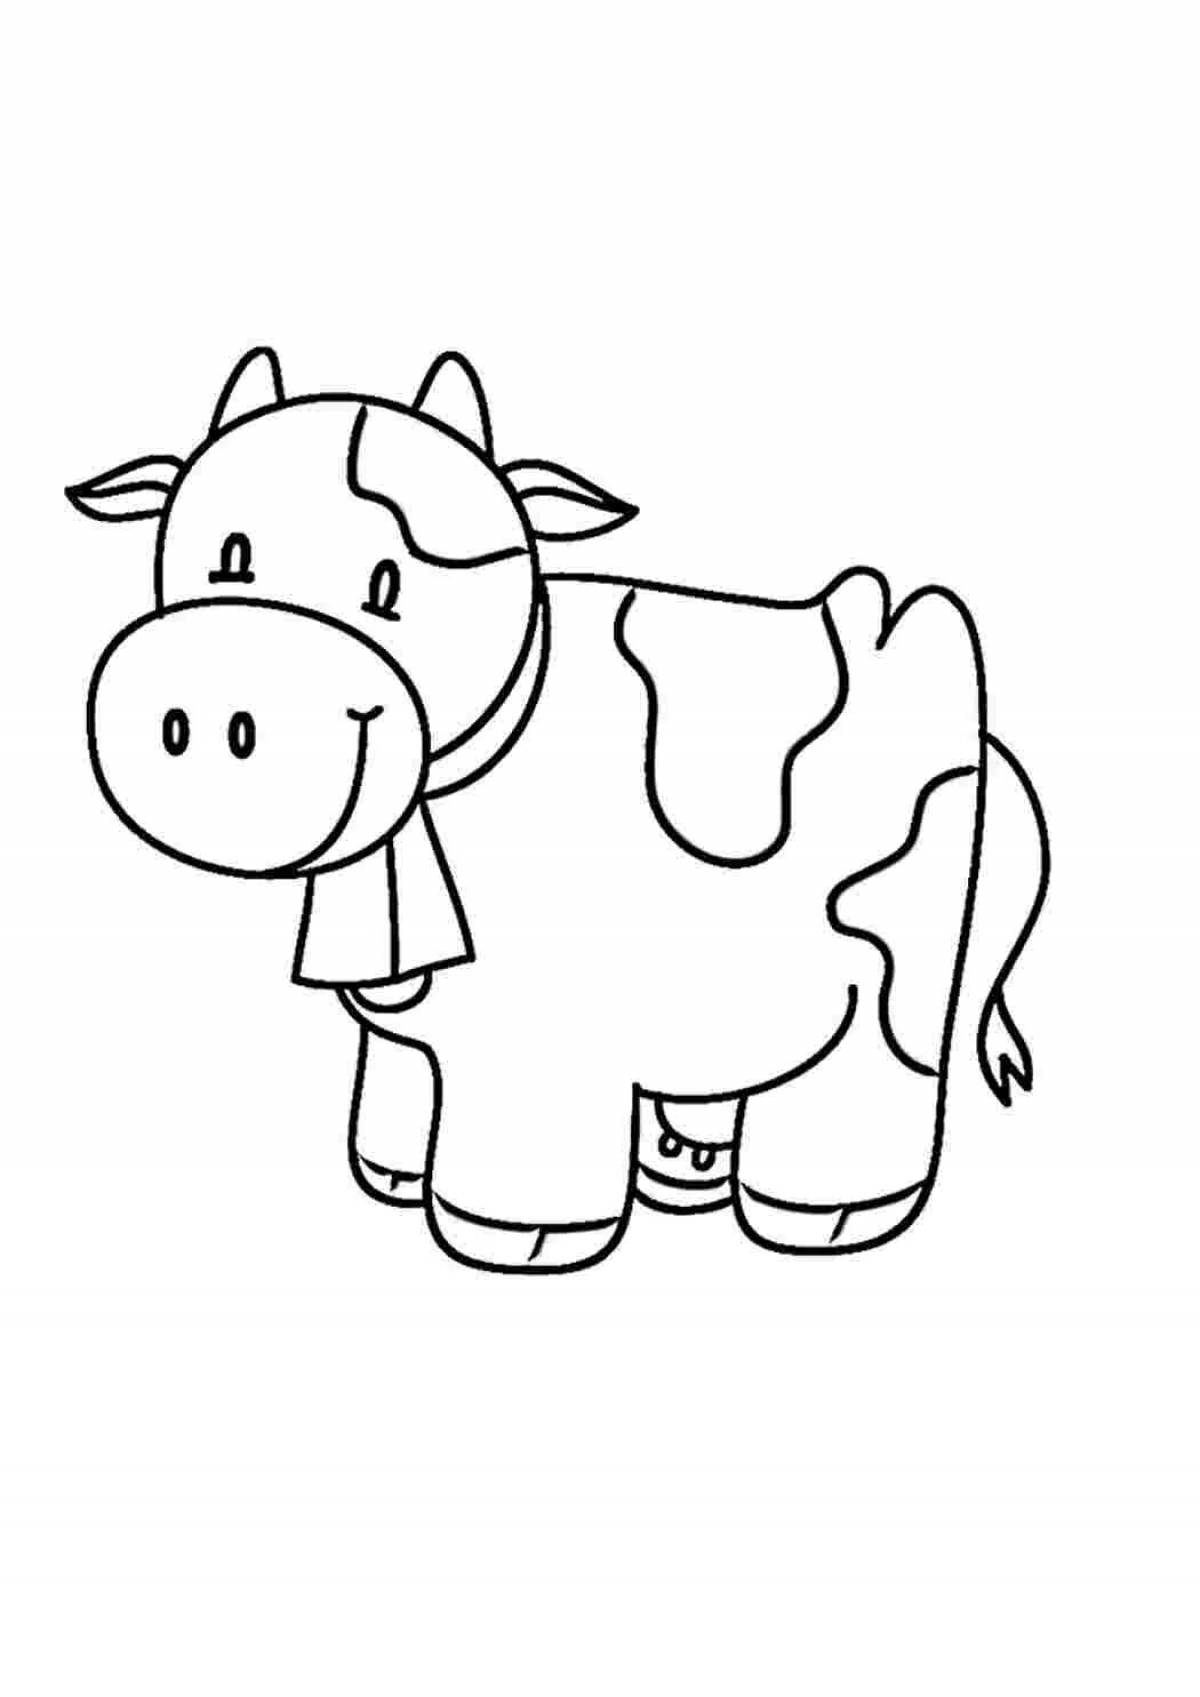 Юношеская раскраска корова для малышей 2 3 лет